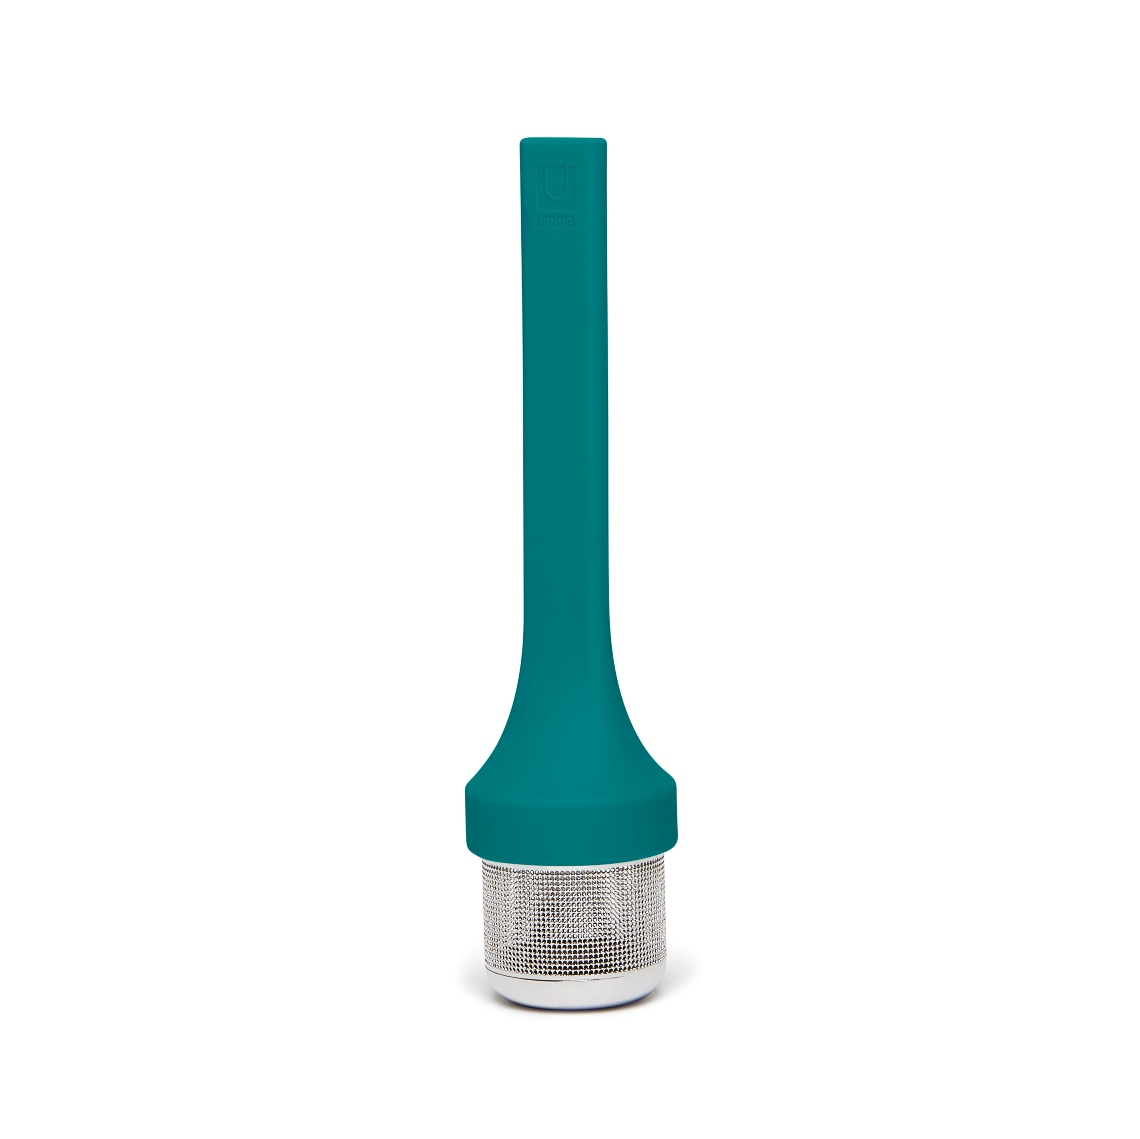 Емкость для заваривания Mytea Turquoise, 4 см, Силикон, Umbra, Канада